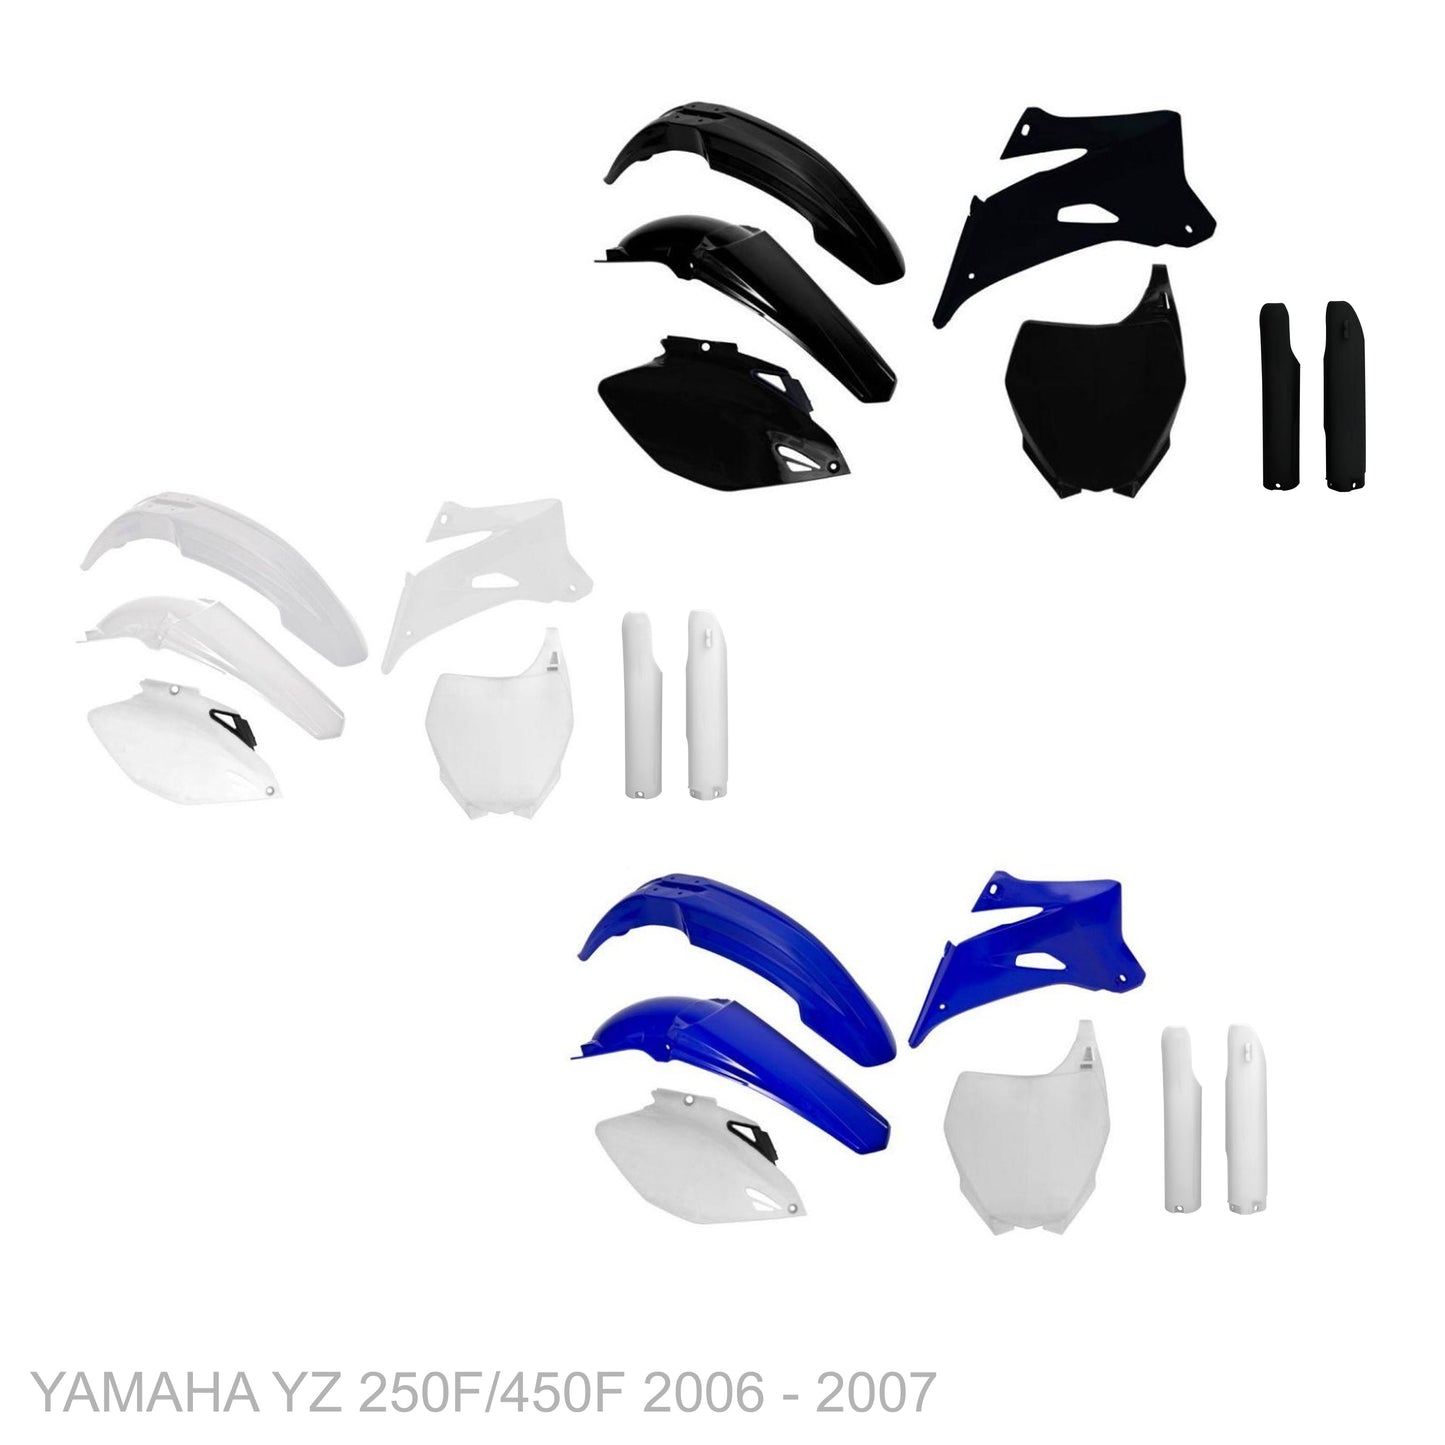 YAMAHA YZ 250F 2006 - 2007 VICE Graphics kit